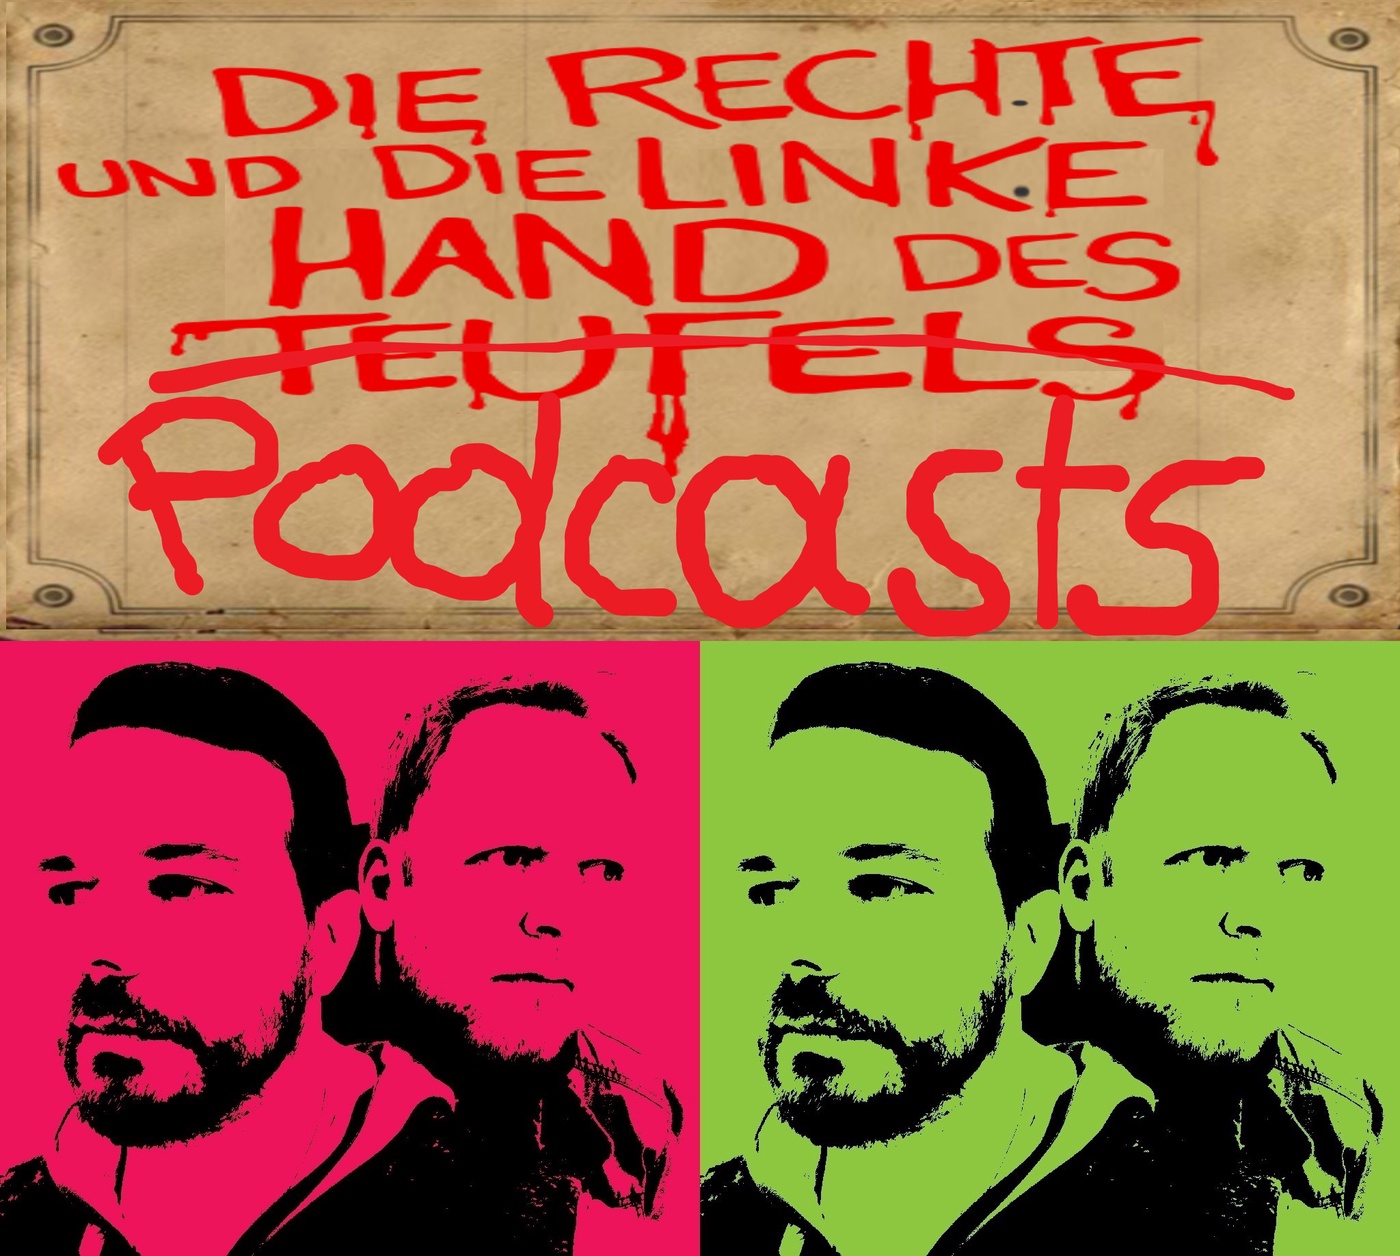 Die rechte und die linke Hand des Podcasts